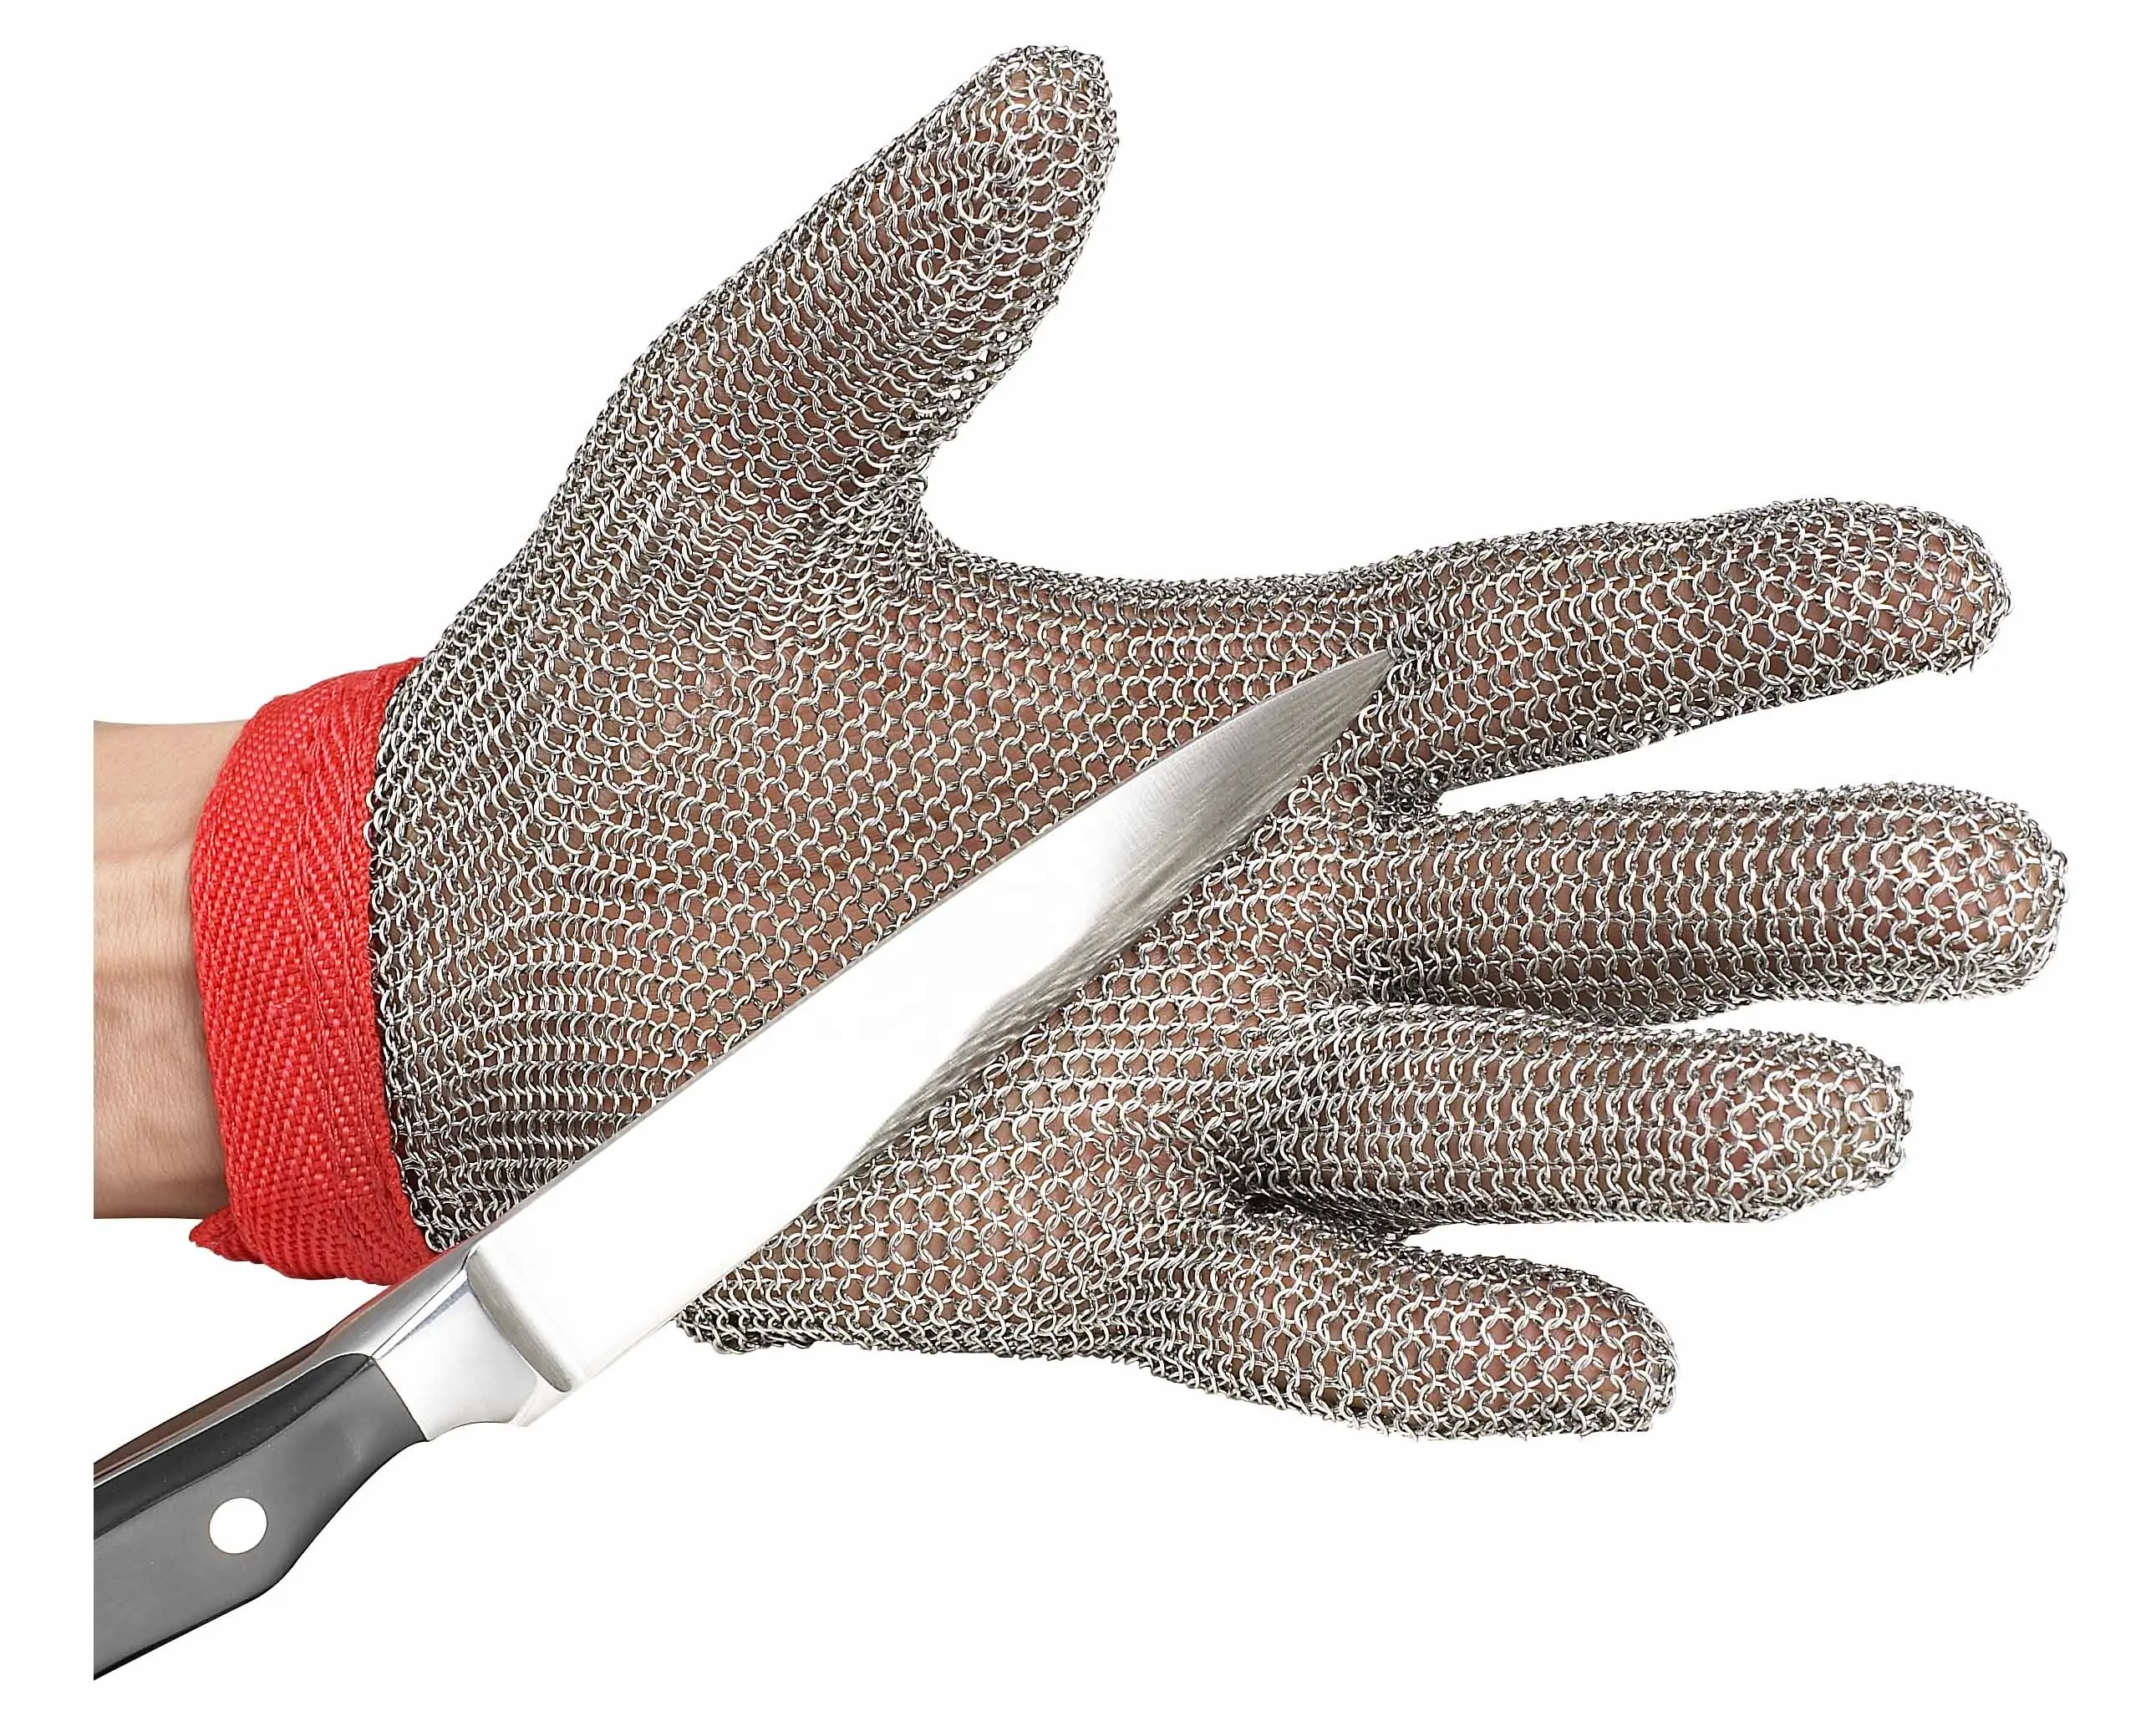 Ucuz fiyat Metal örgü eldiven 316L paslanmaz çelik kesim dayanıklı eldiven Anti Cut bıçak geçirmez güvenlik koruma eldiven